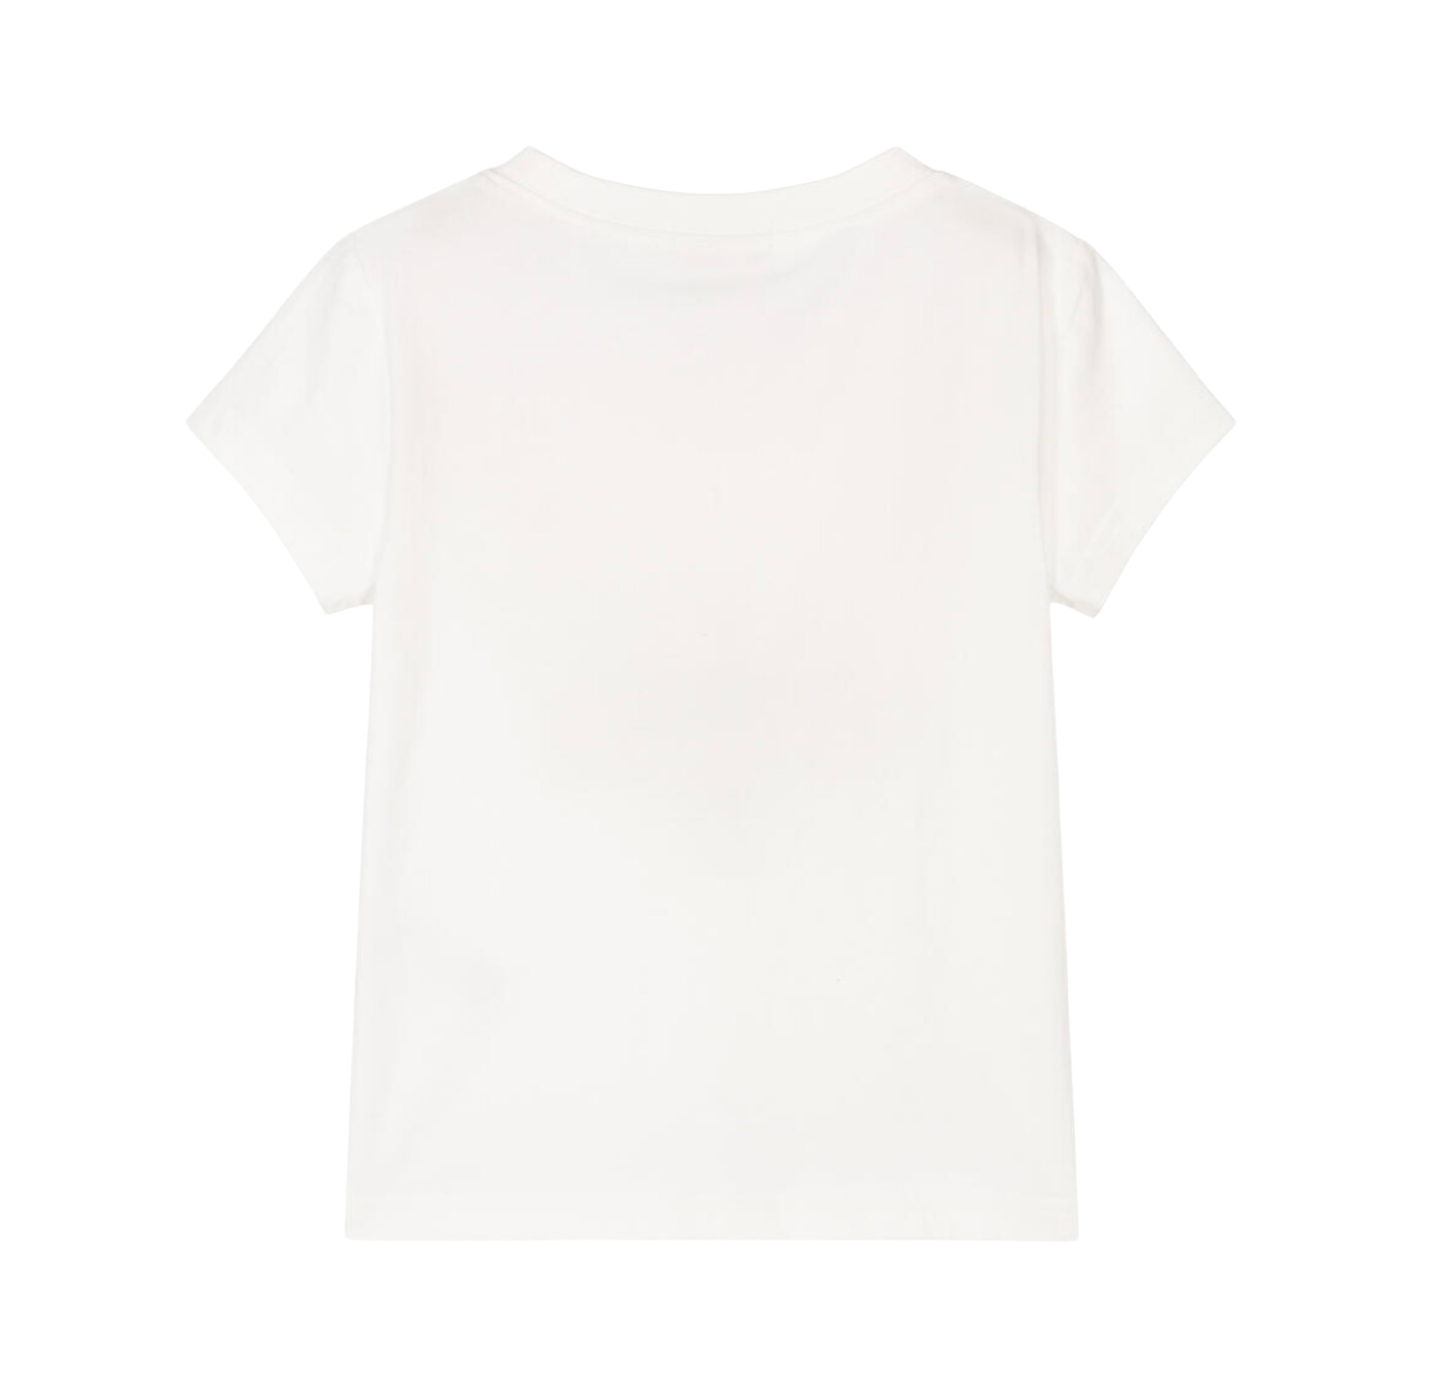 ANGEL’S FACE - T shirt blanc en coton noeud rose - 4/5 ans